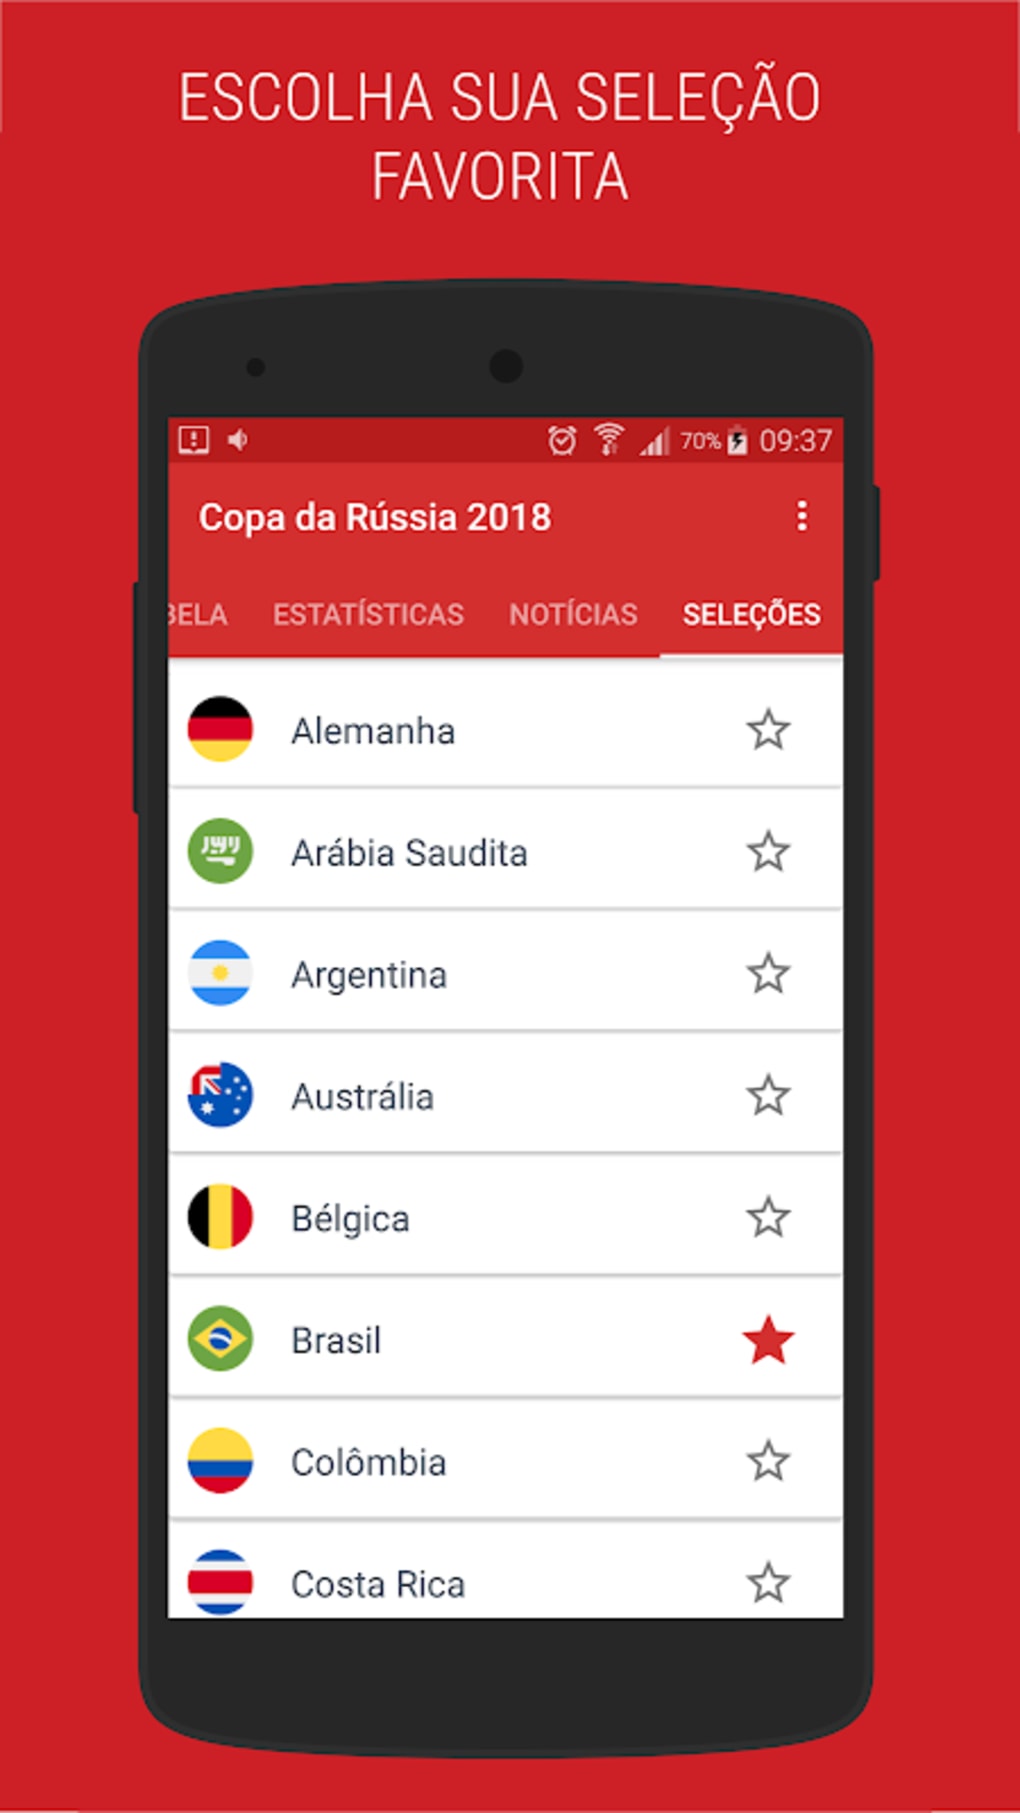 Copa do Mundo 2018: Tabela, jogos e notícias APK for Android - Download